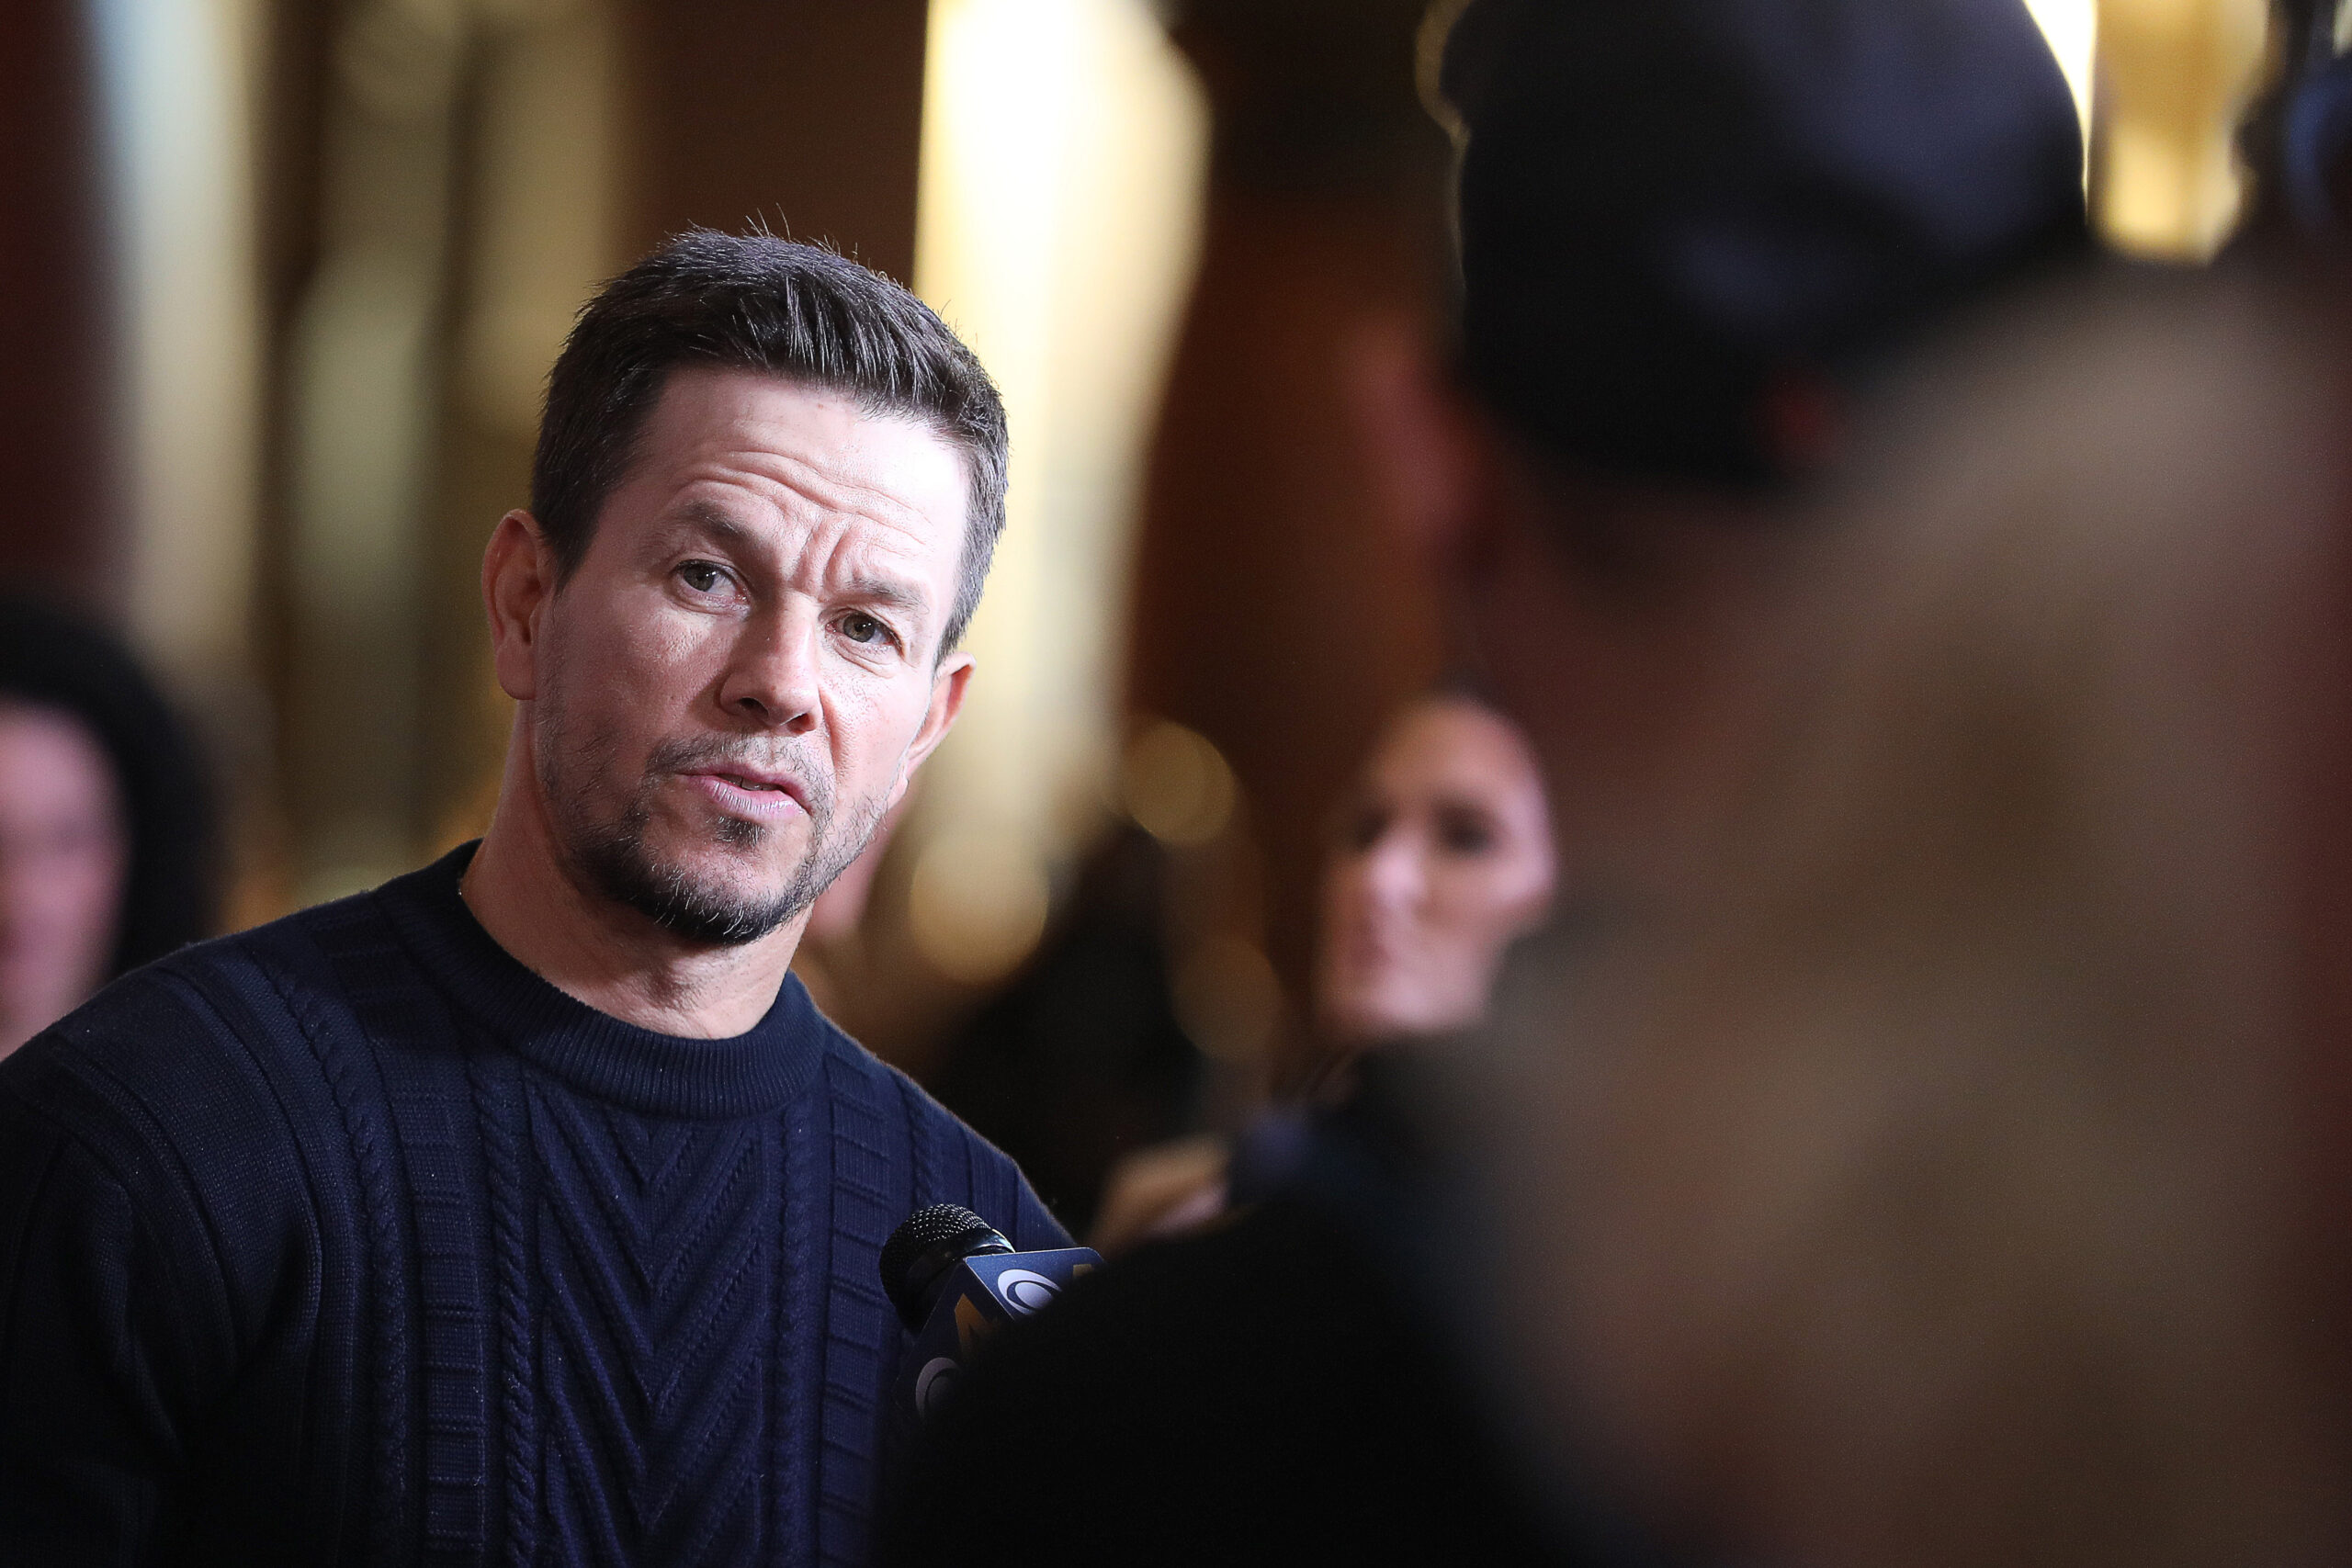 Mark Wahlberg urges unity post-COVID: ‘Prayer unites us